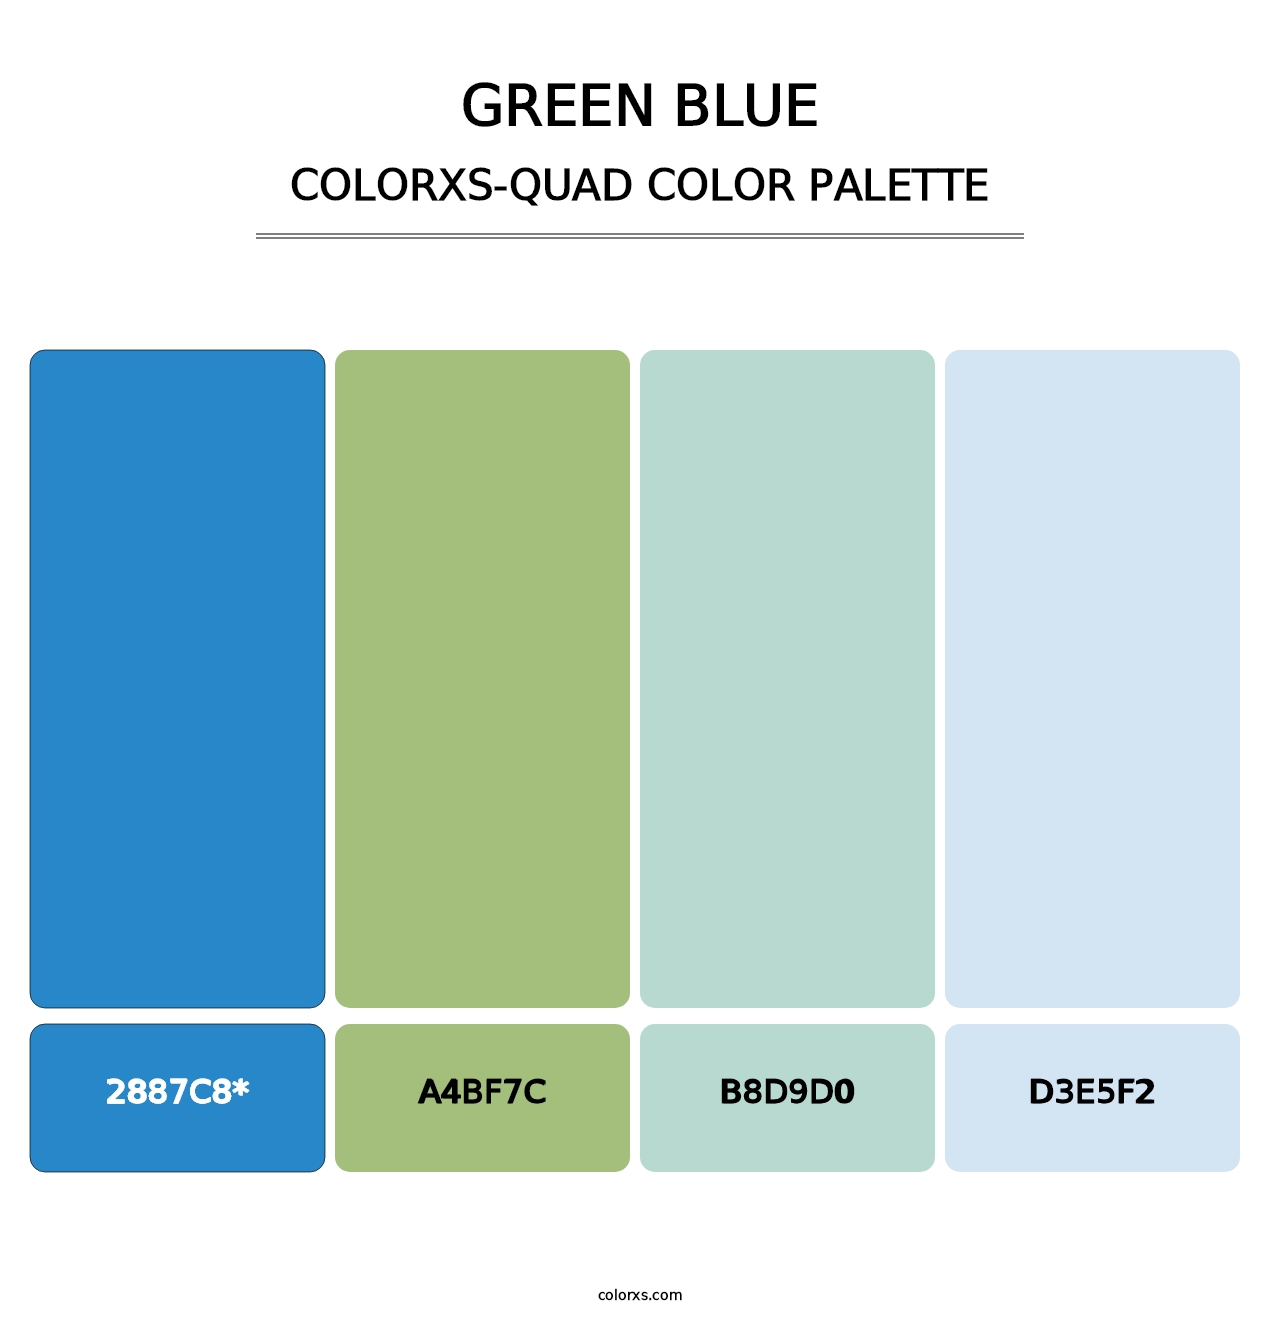 Green Blue - Colorxs Quad Palette